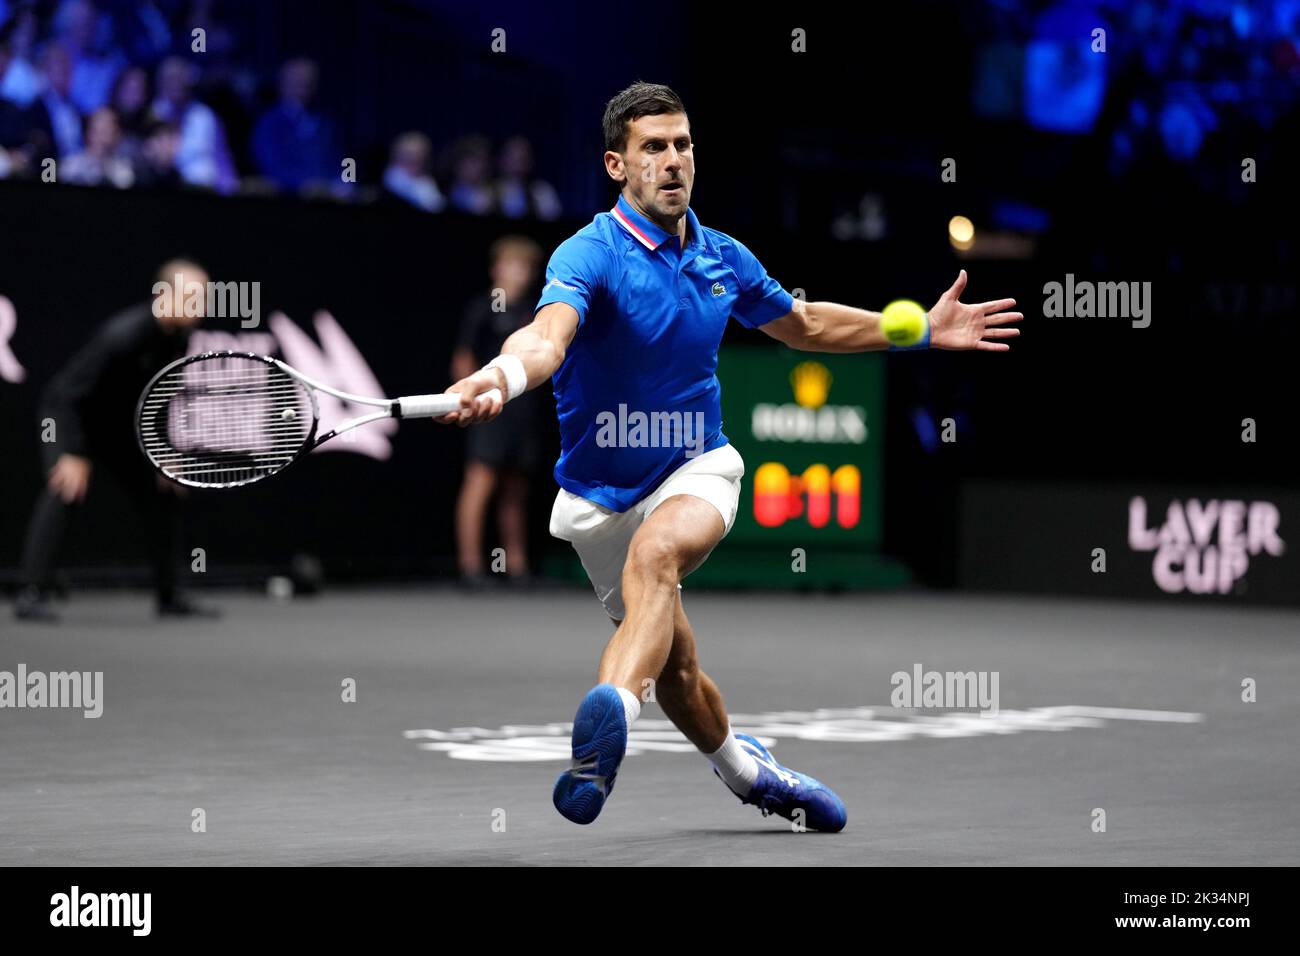 Novak Djokovic durante su partido contra Frances Tiafoe en el segundo día de la Copa Laver en el O2 Arena, Londres. Fecha de la foto: Sábado 24 de septiembre de 2022. Foto de stock